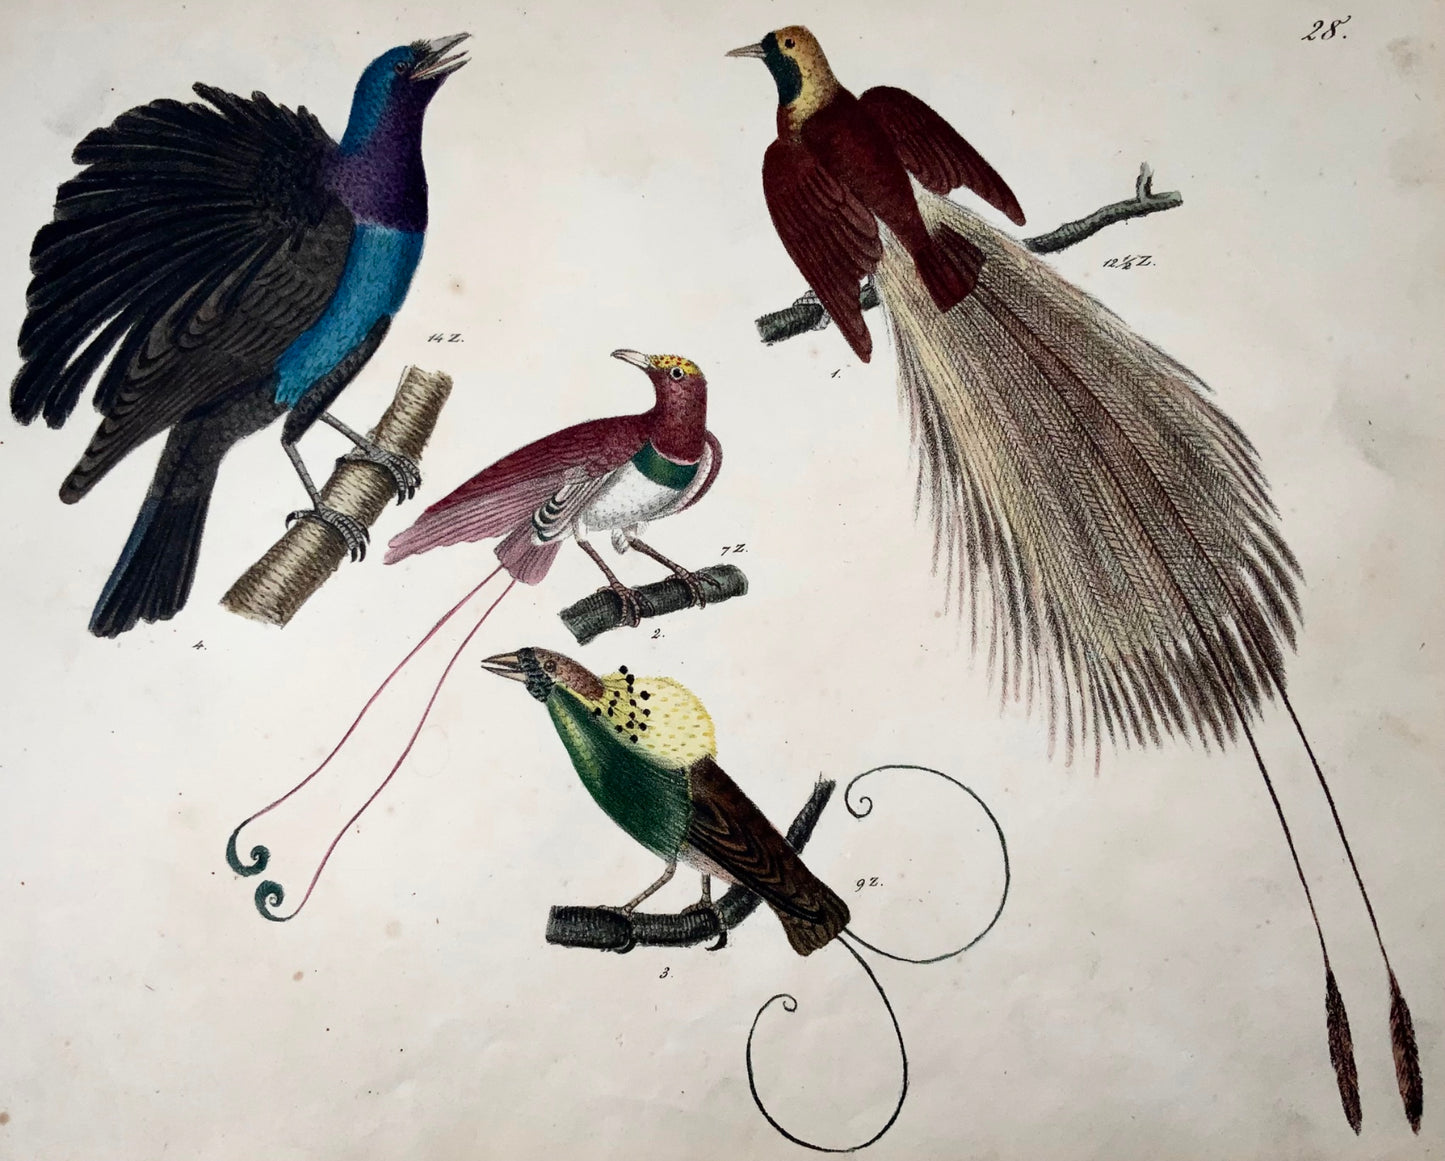 1819 Uccelli del Paradiso, ornitologia, Strack, litografia a gesso, colore a mano